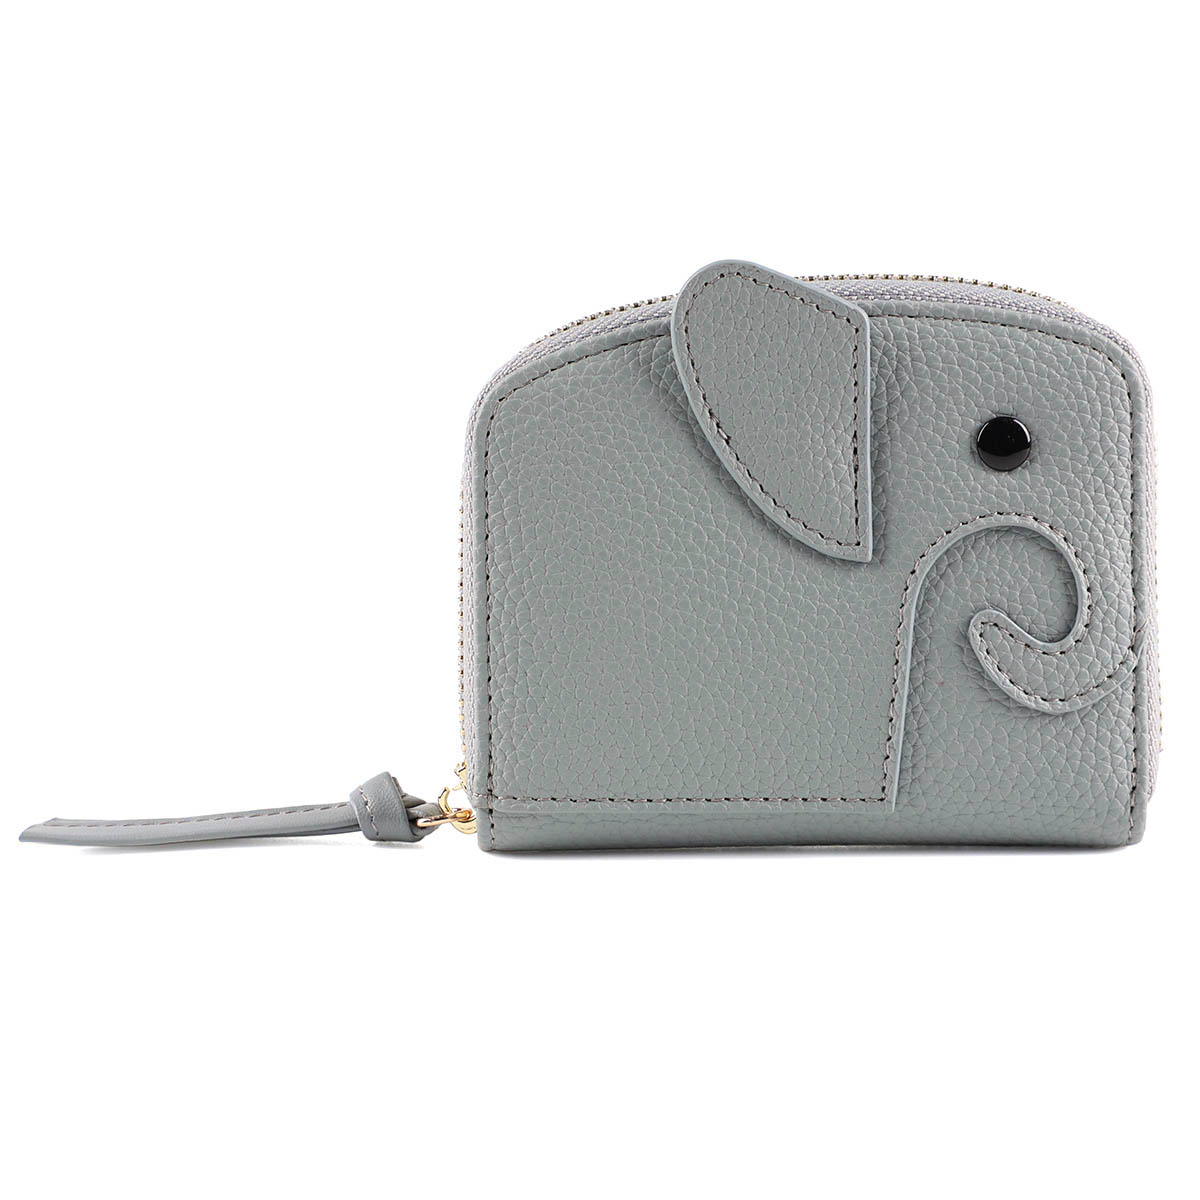 ミニ財布 レディース ゾウ型 コンパクト カードケース 二つ折り 財布 かわいい ブランド 象 じゃばら 小銭入れ お札が折れない スキミング 防止  LIZDAYS